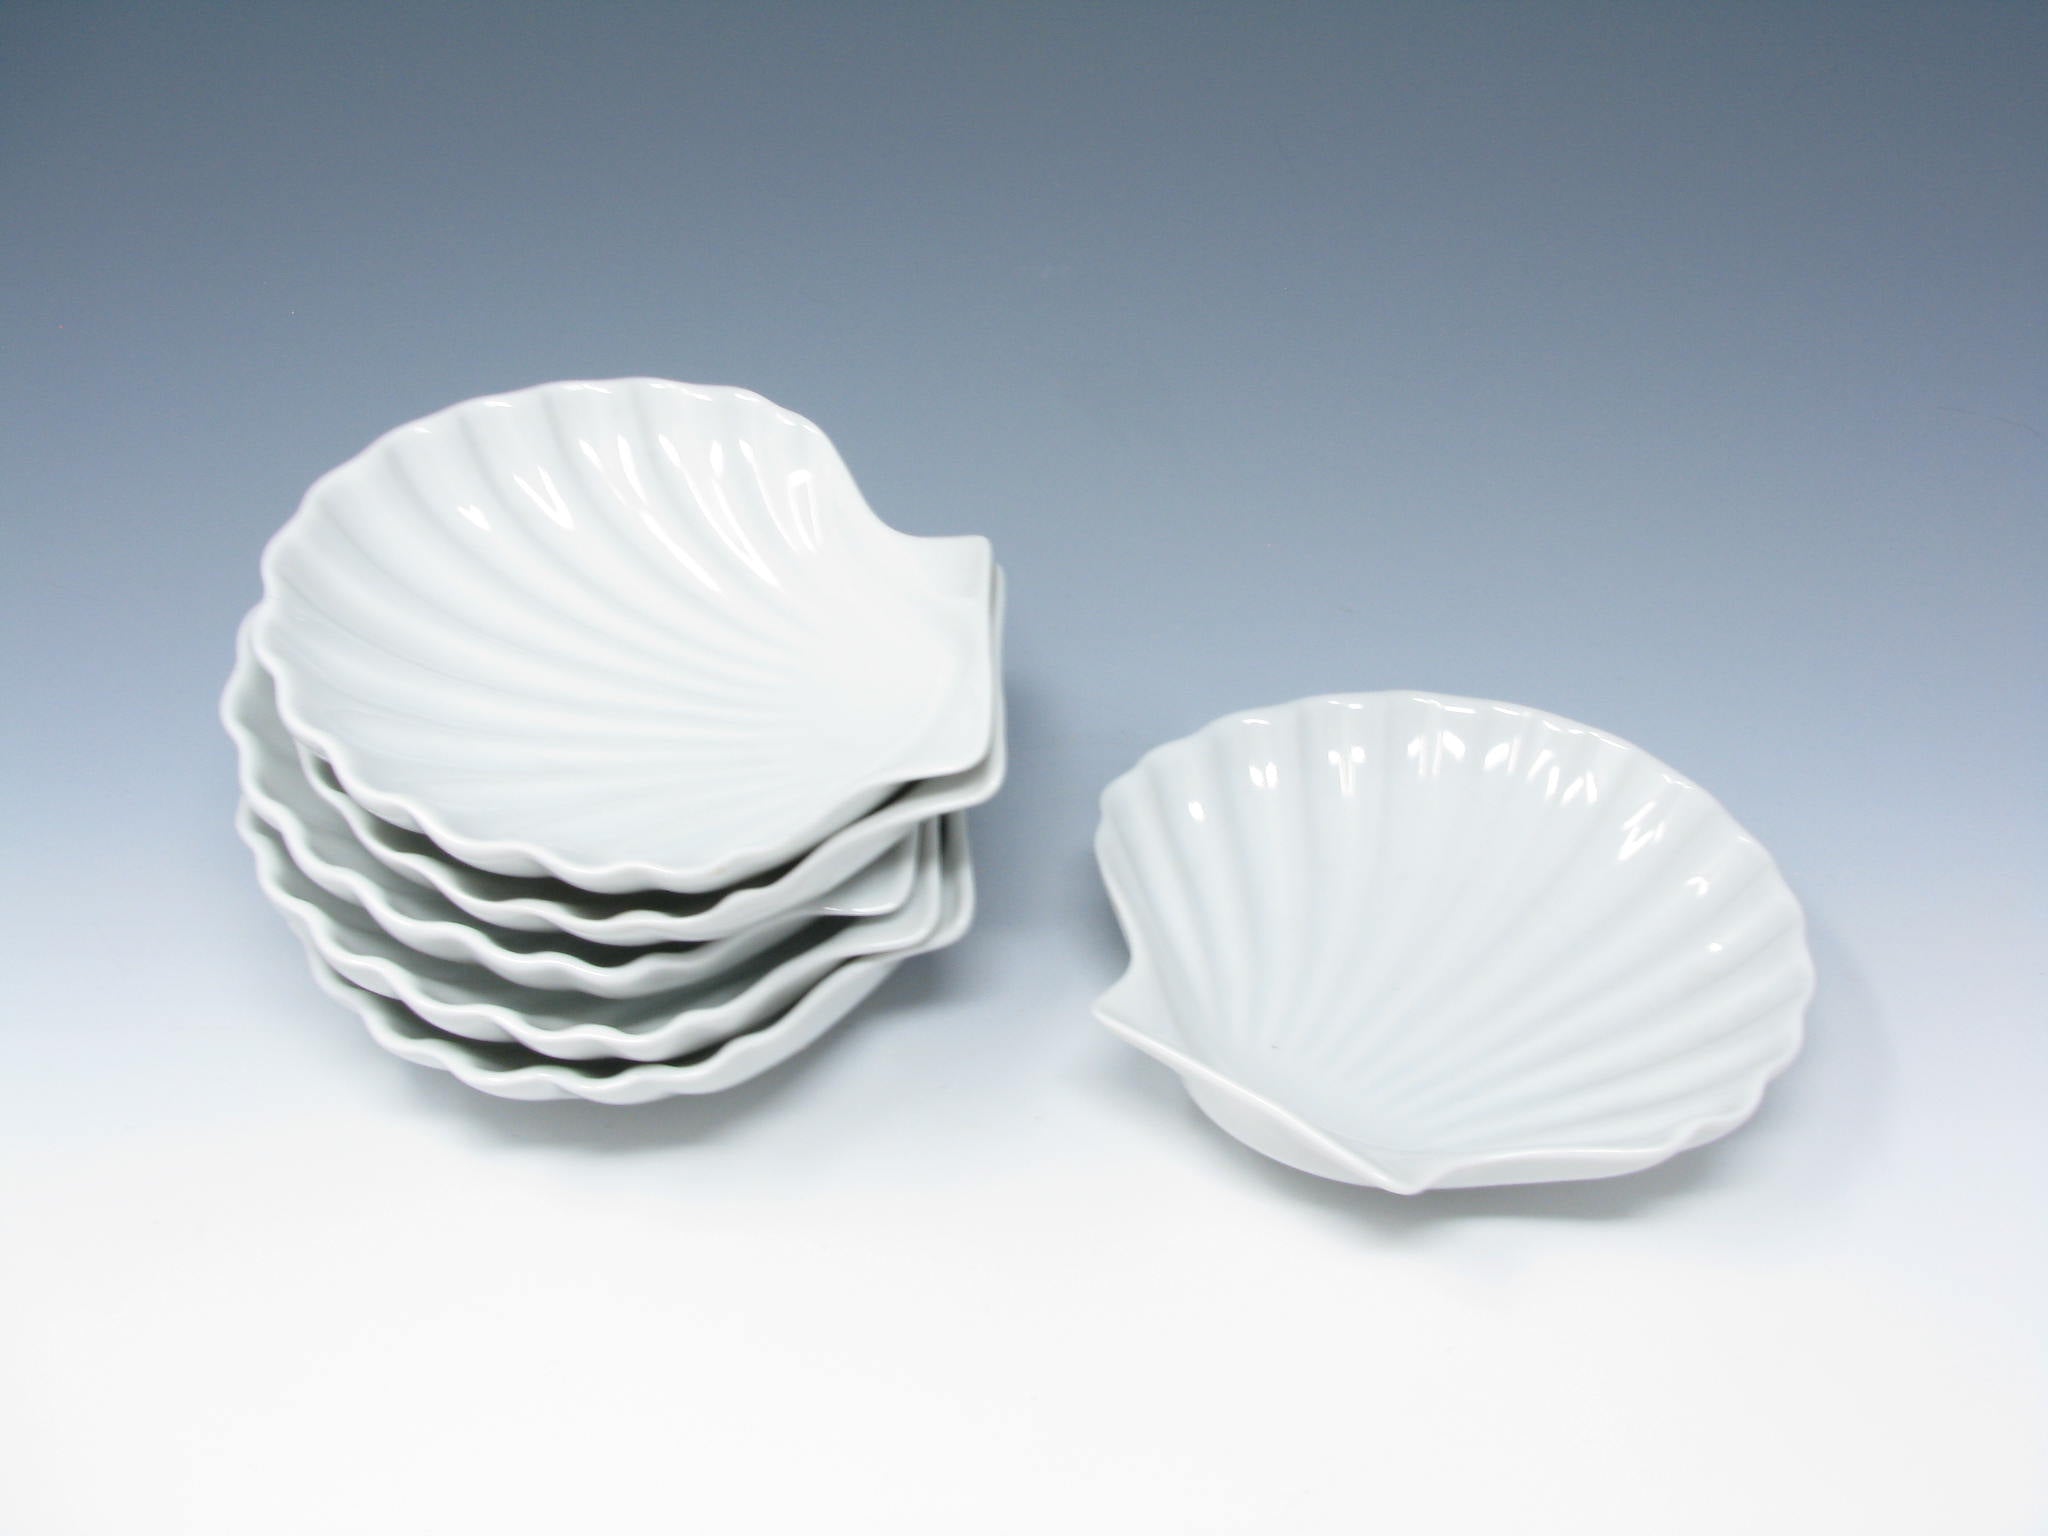 edgebrookhouse - Vintage Dansk International Designs France Porcelain Shell Shaped Bowls - 6 Pieces